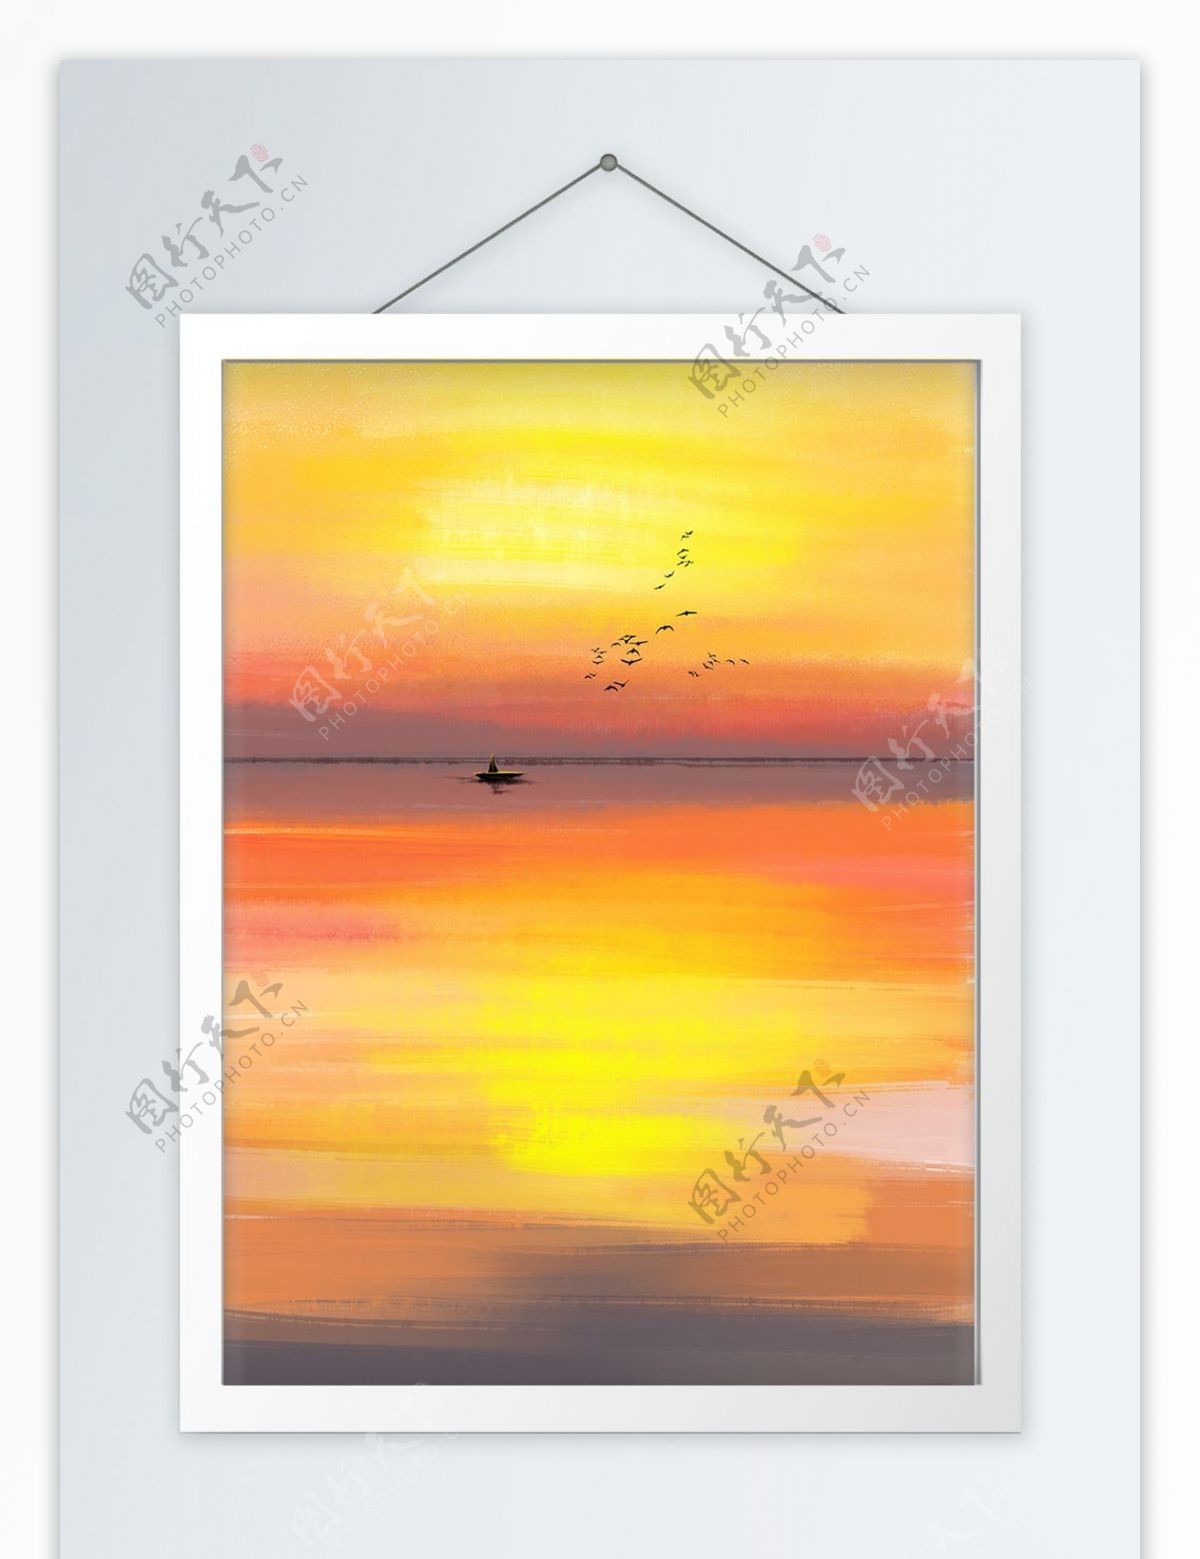 现代手绘油画风景海面夕阳装饰画